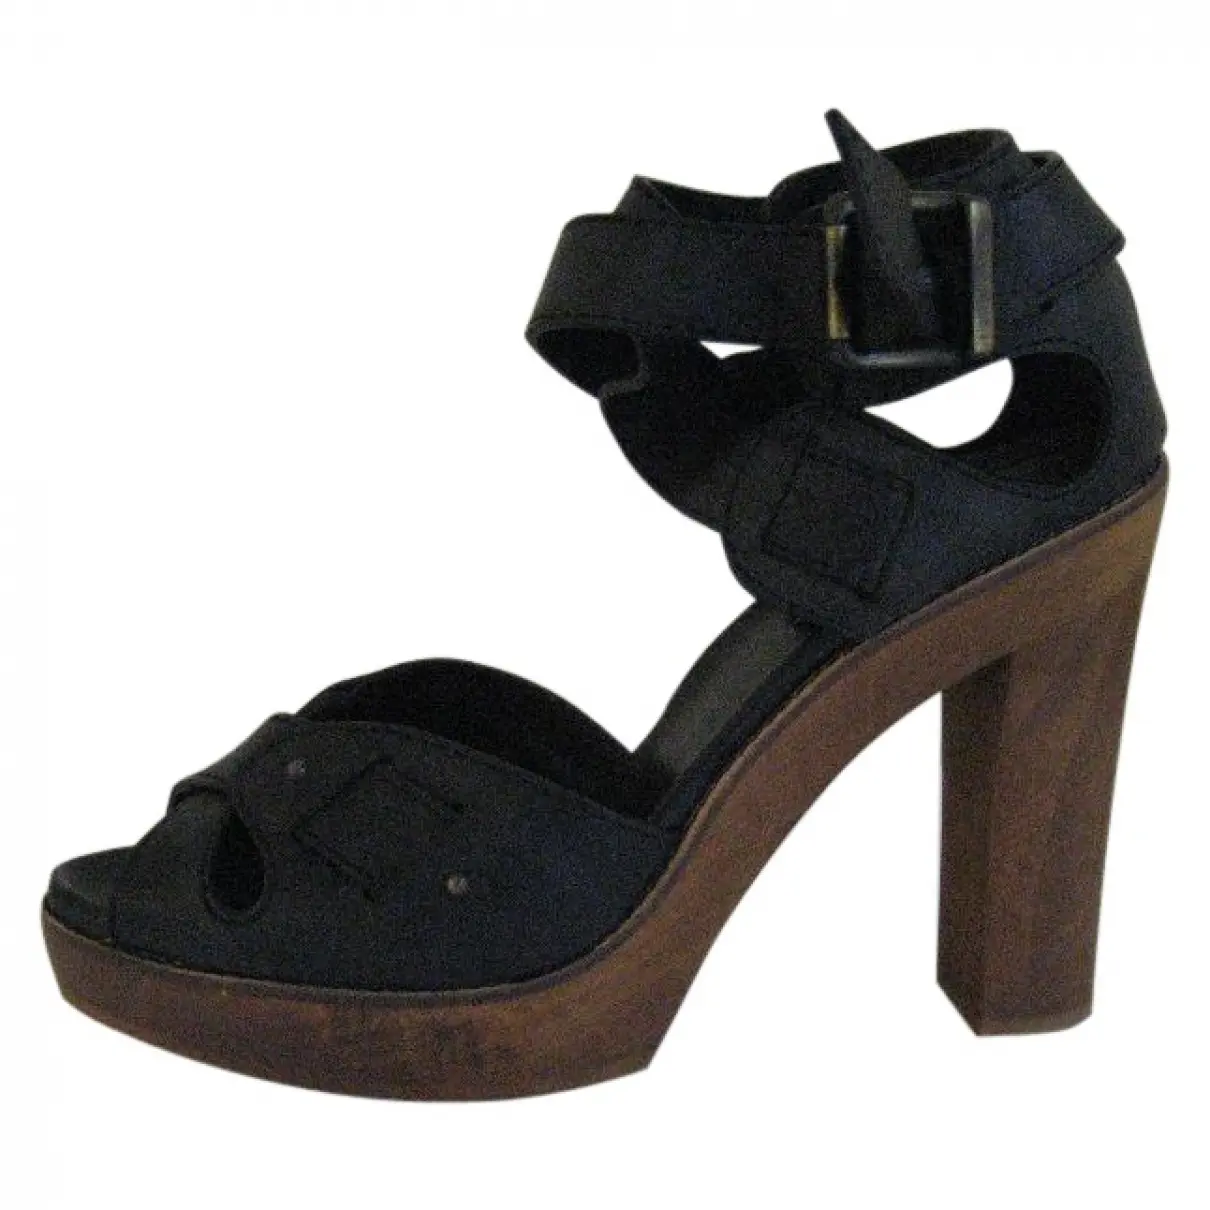 Black Leather Sandals Chloé